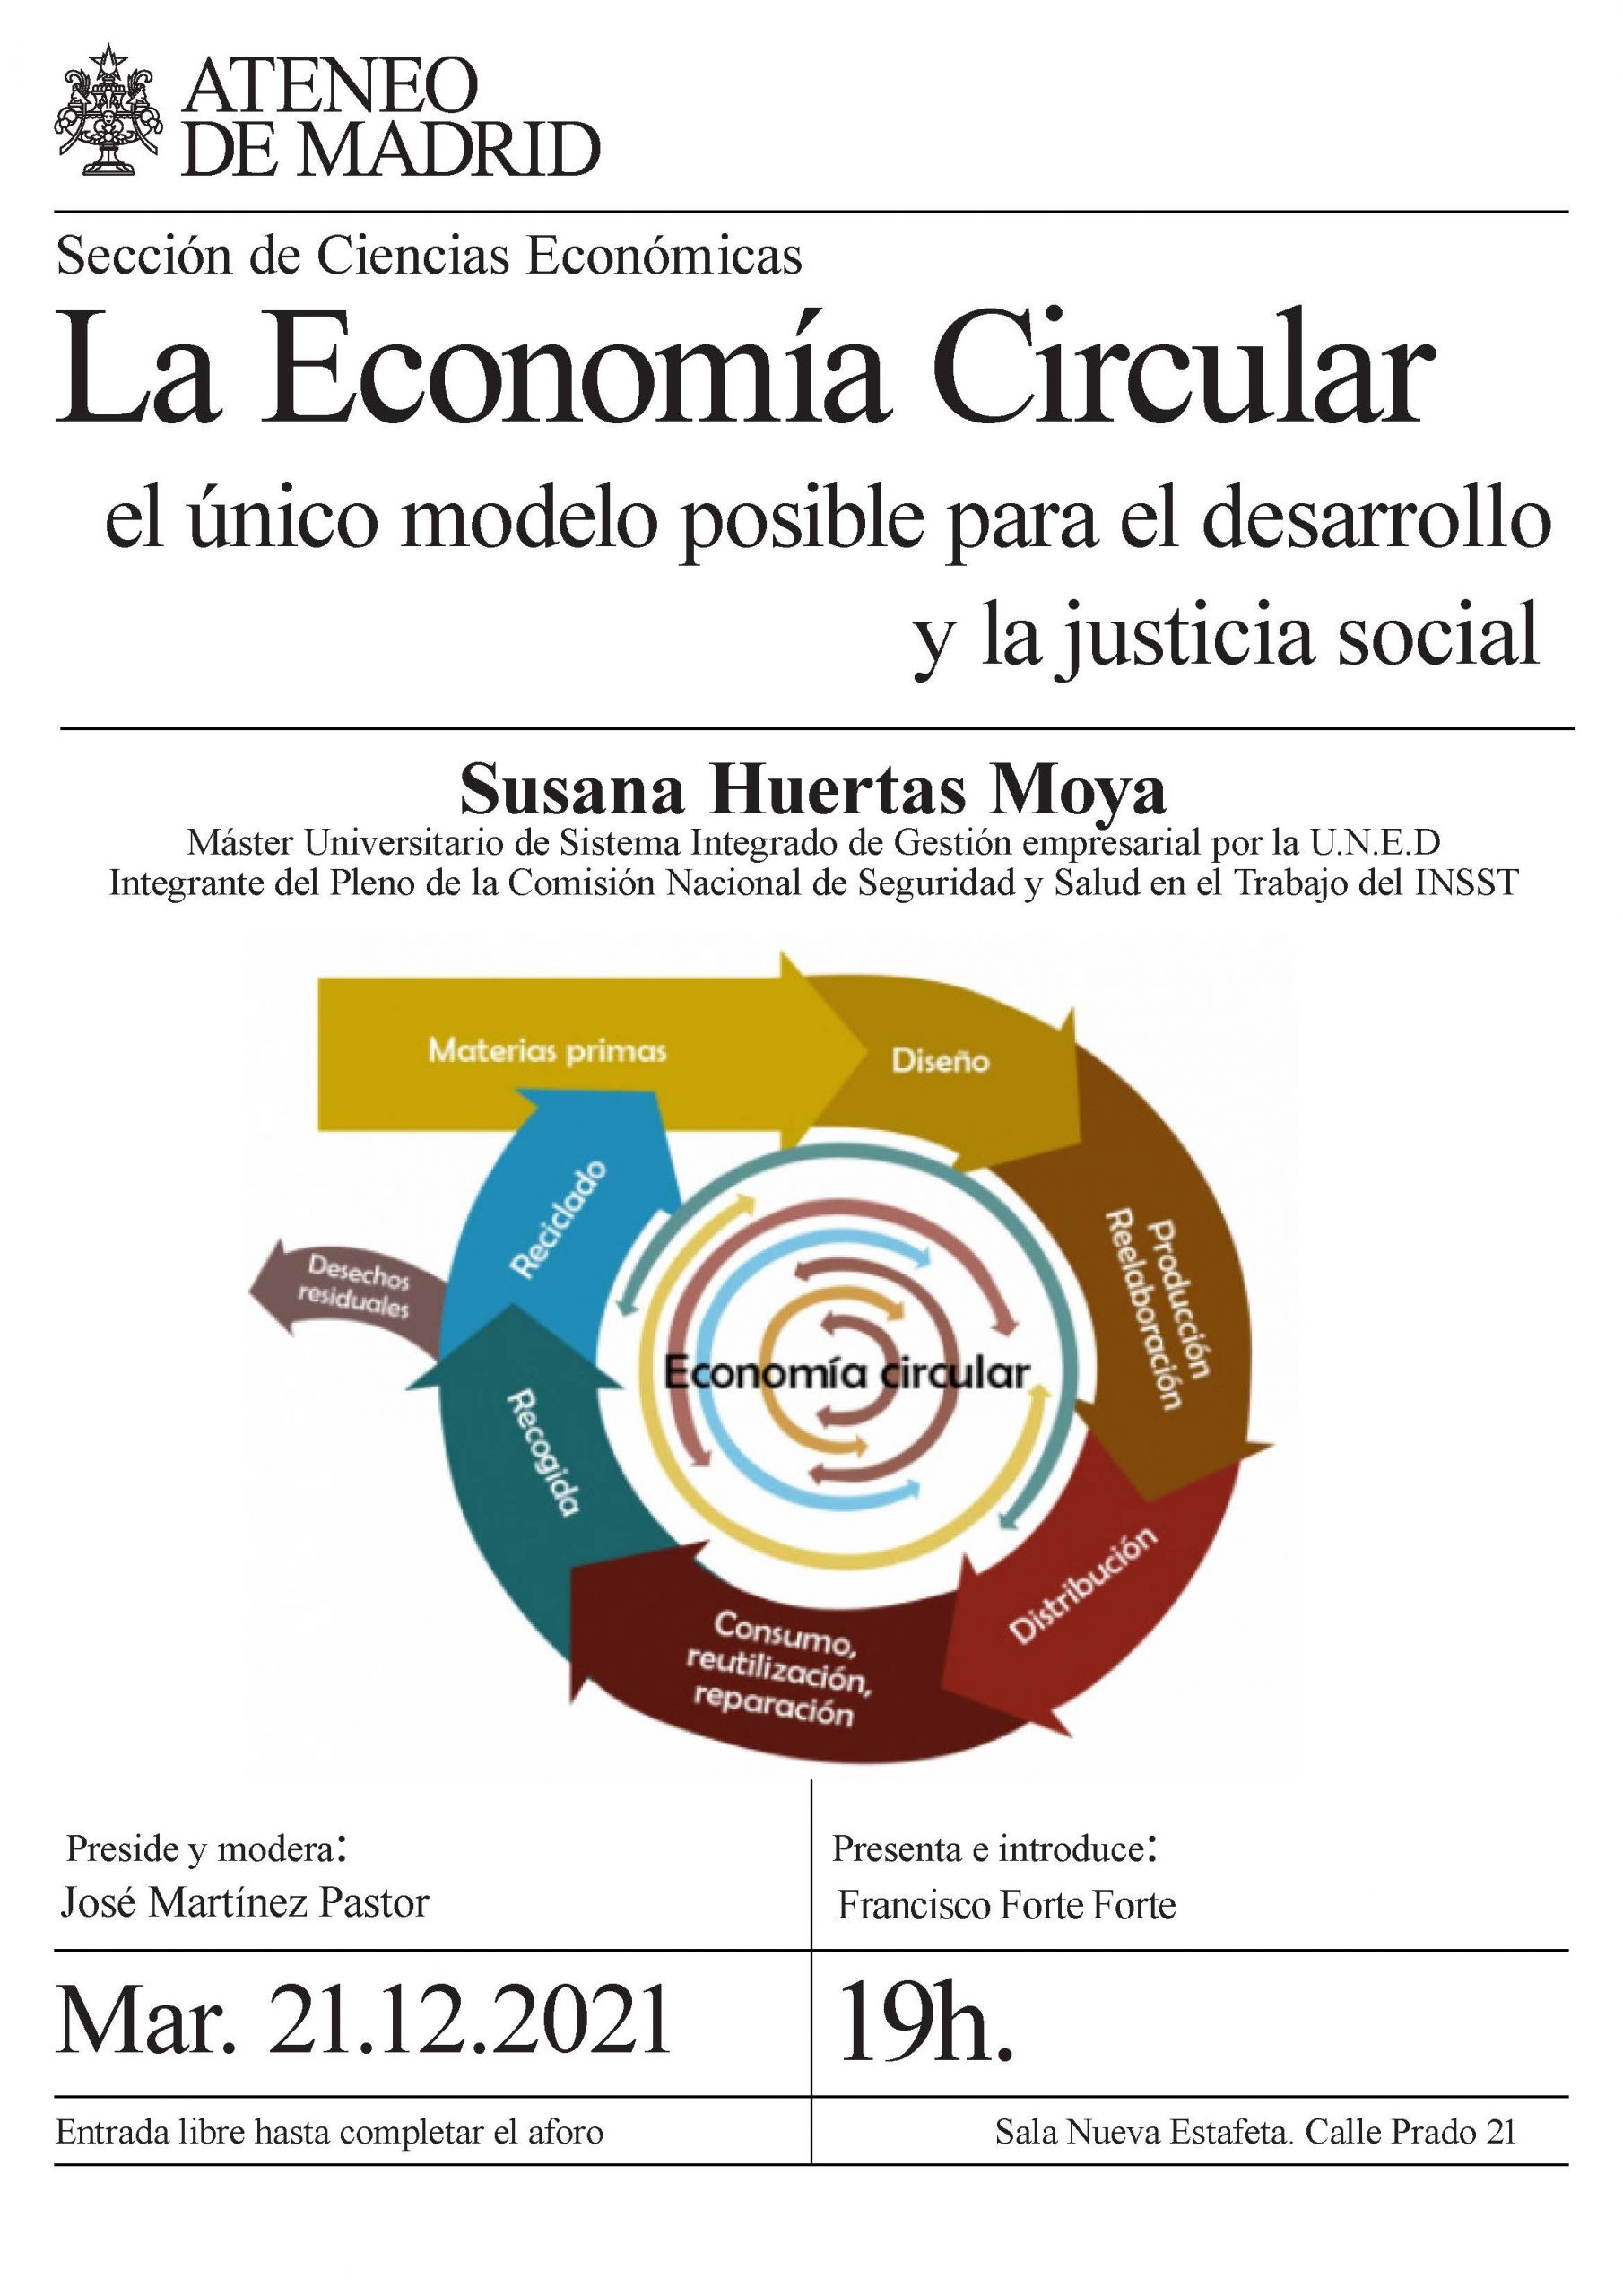 a Economía Circular el único modelo posible para el desarrollo y la justicia social. Ponente Susana Huertas Moya